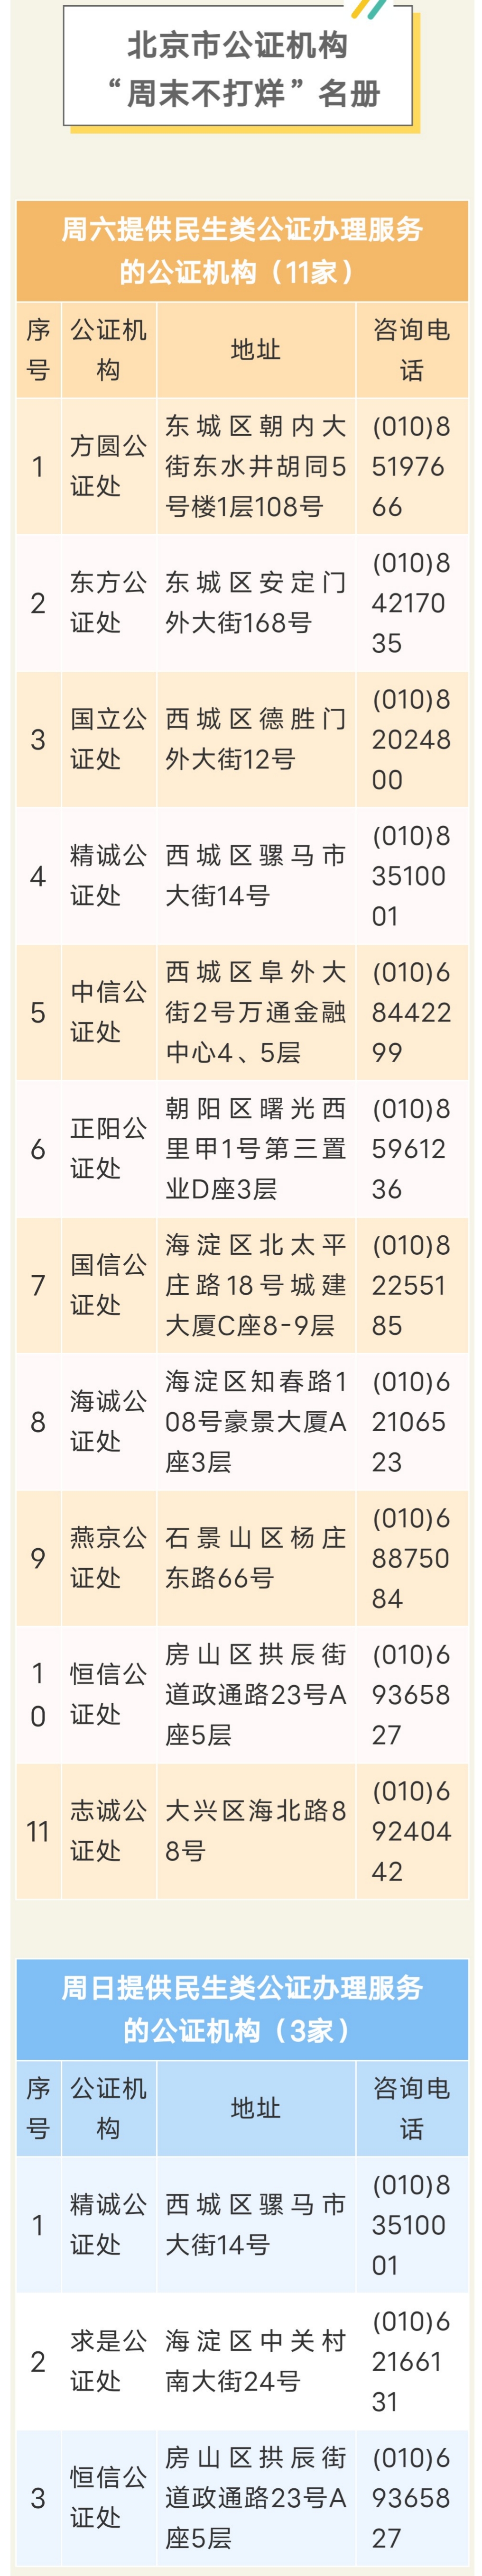 北京公证处一览表,北京公证处一览表地址